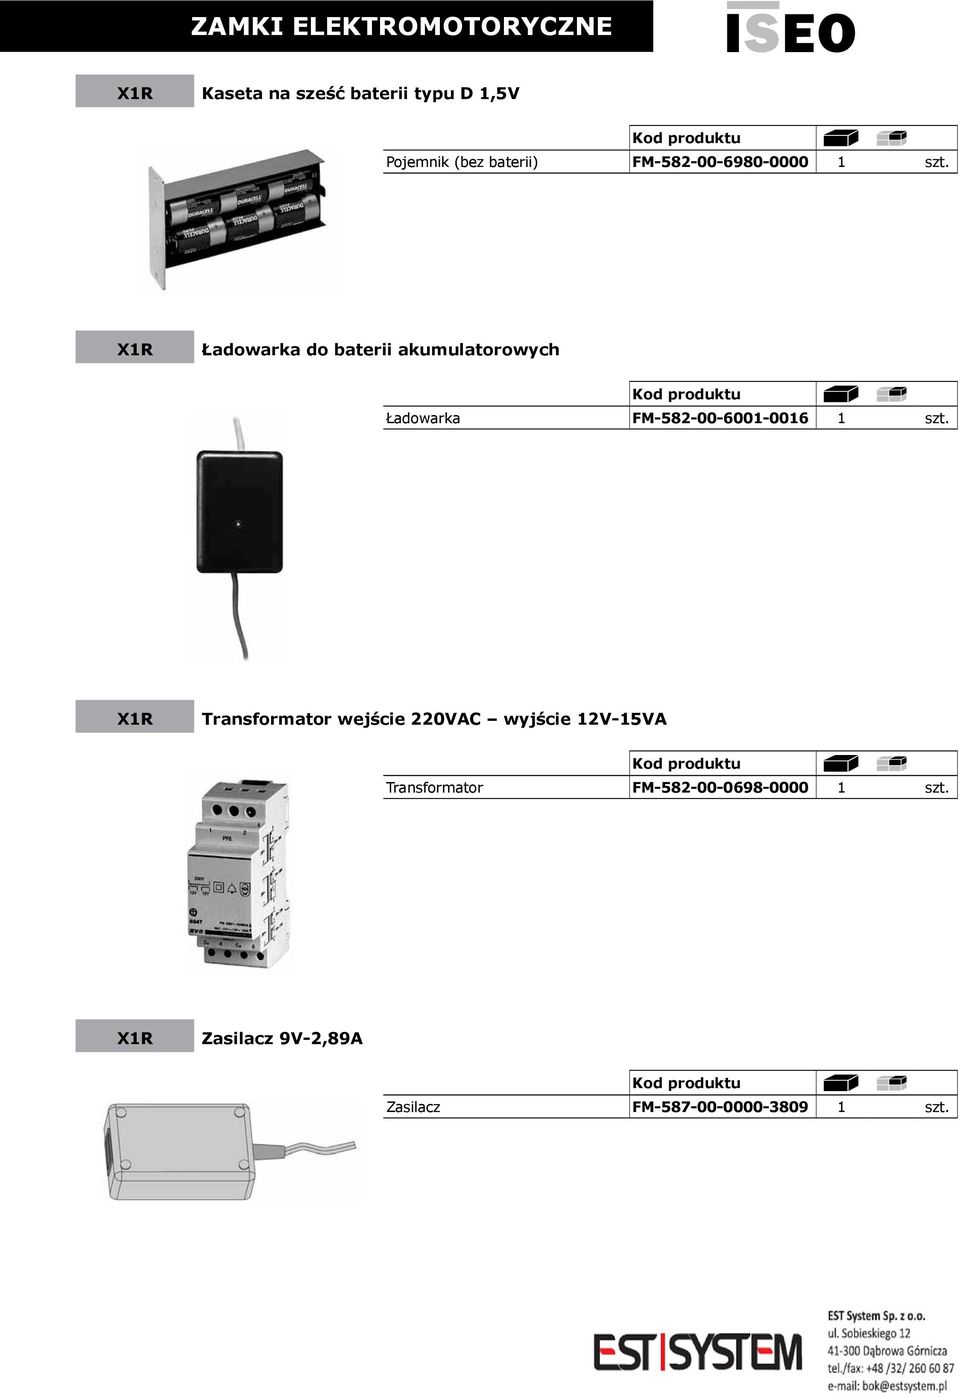 Ładowarka do baterii akumulatorowych Ładowarka FM-582-00-6001-0016 1 szt.